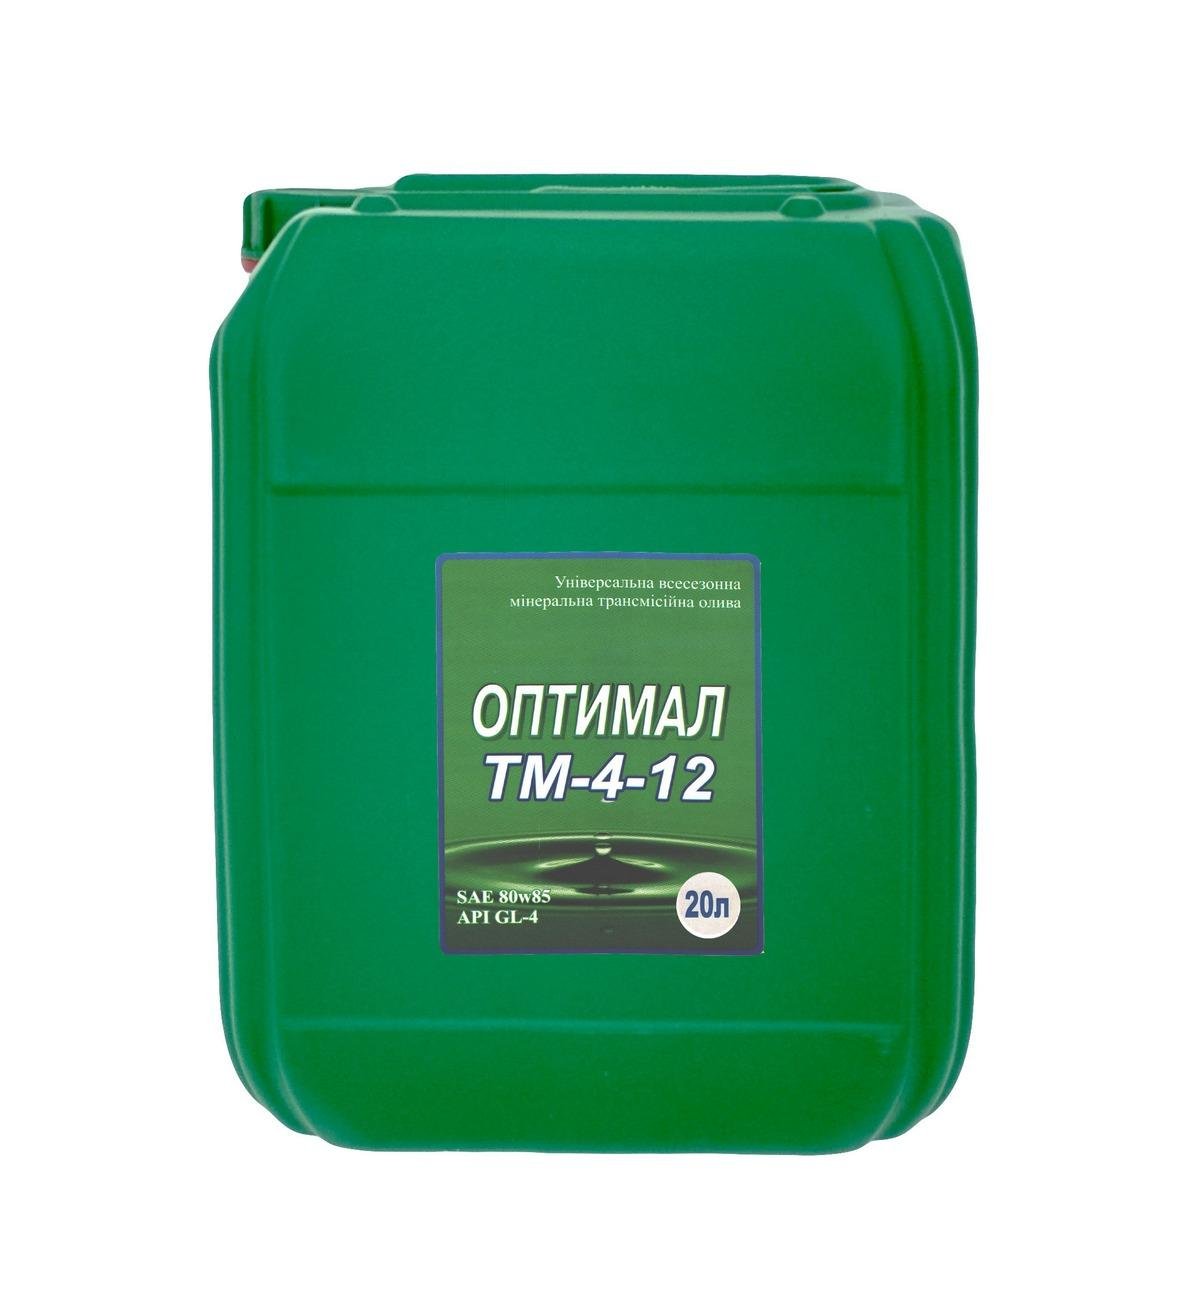 Optimal ТМ-4-12